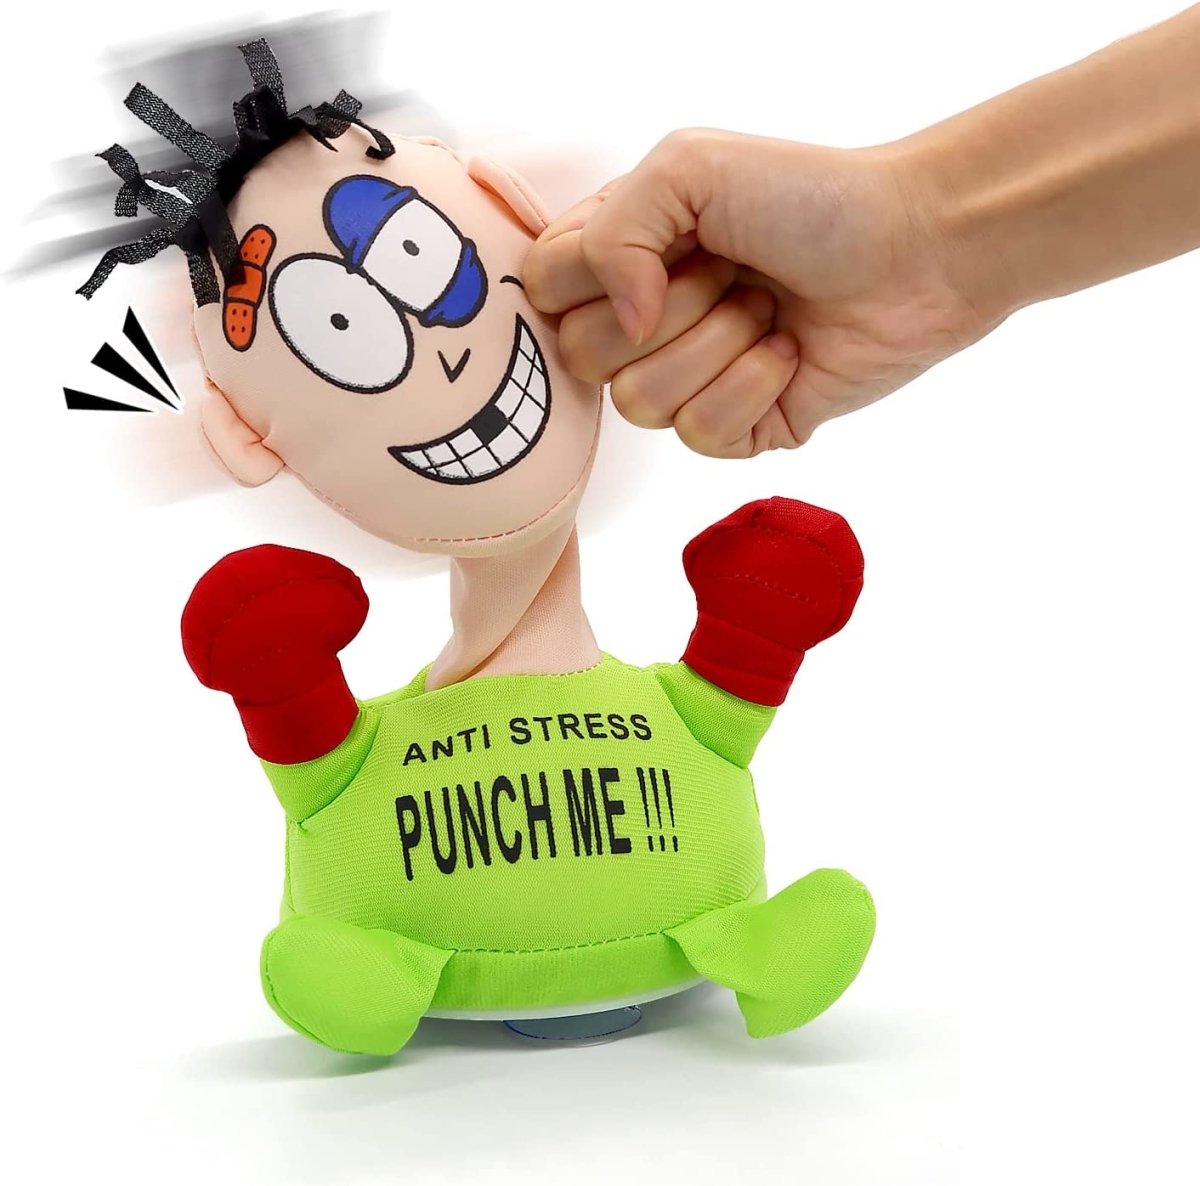 Punch Me Plush